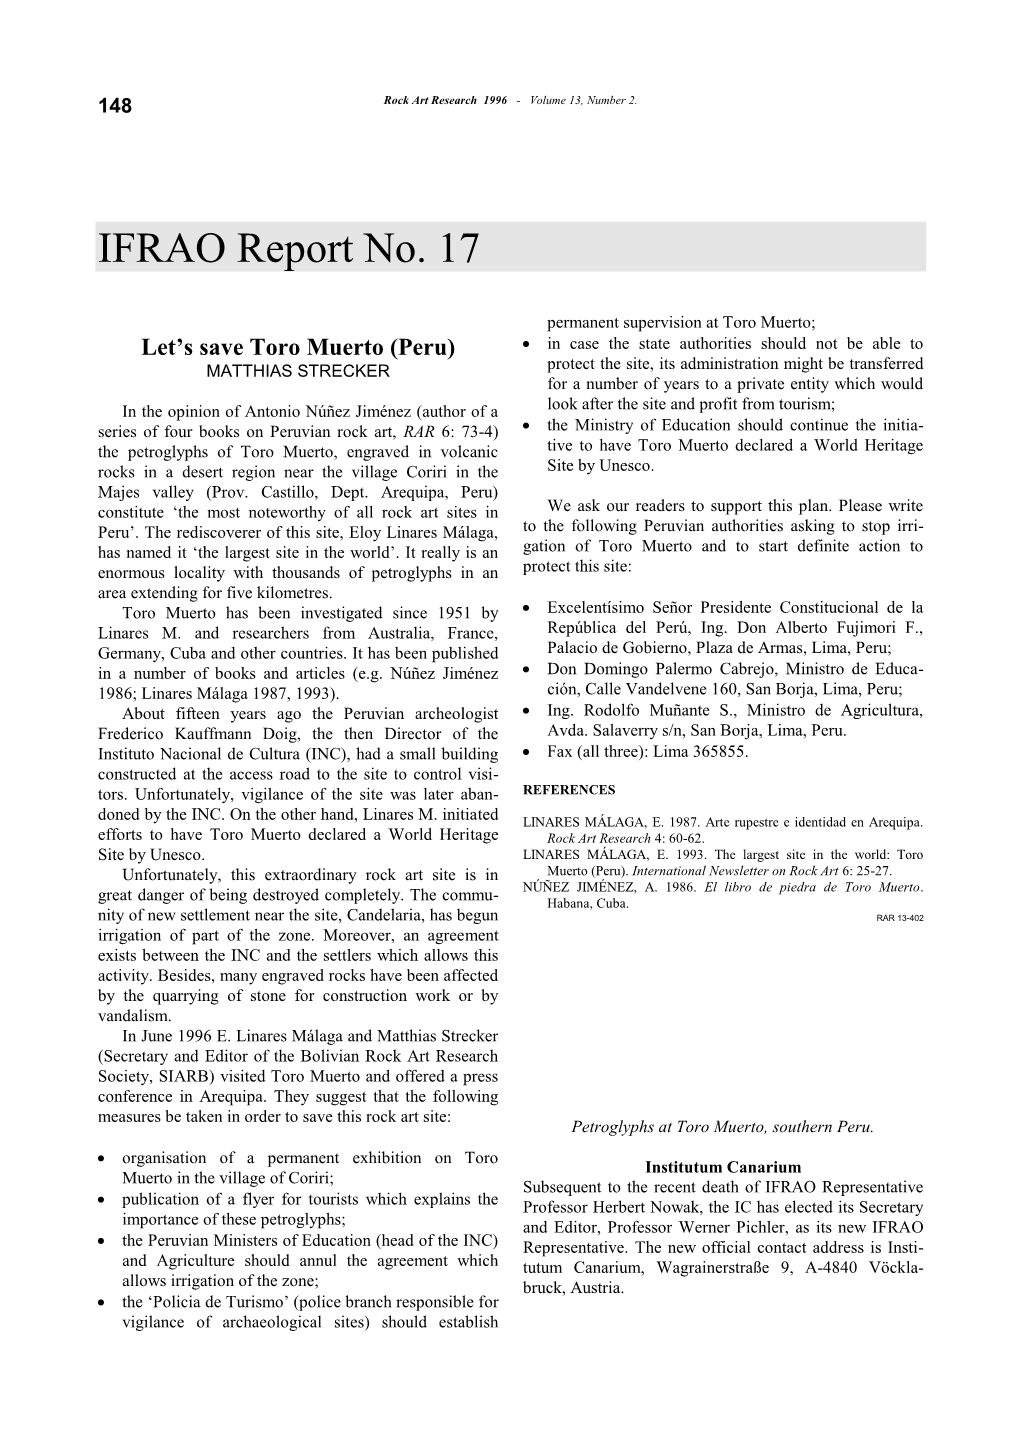 IFRAO Report No